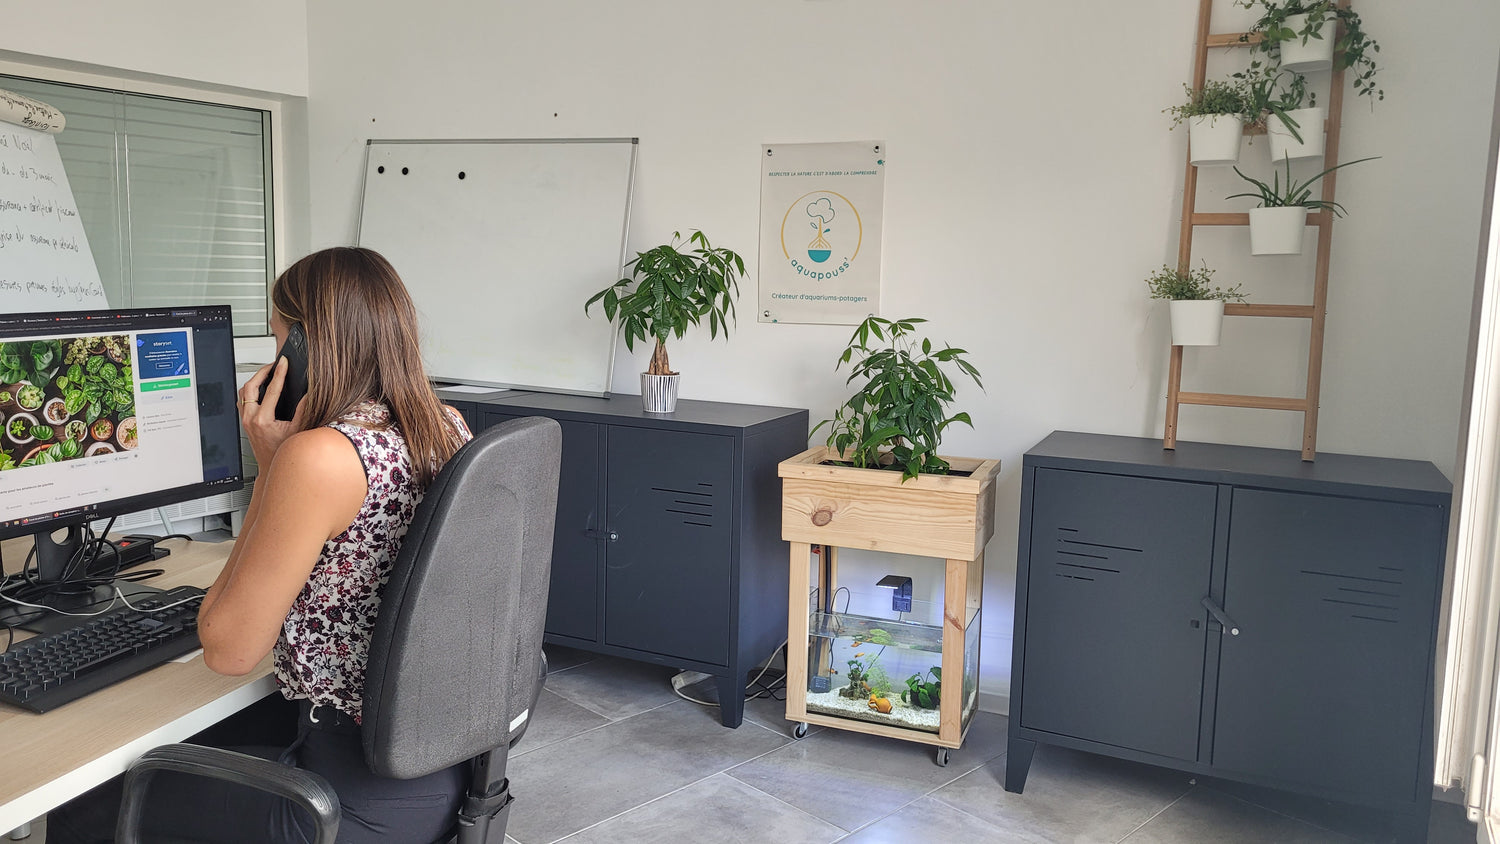 On peut voir une dame qui est assise à son bureau, au téléphone devant son ordinateur.A côté de son bureau entre deux étagères se trouve un kit aquapouss' mini, on peut voir l'aquarium bien éclairé et des plantes vertes dans le bas de culture. Il y a en plus quelques plantes en plus dans la pièce se qui donne une ambiance zen